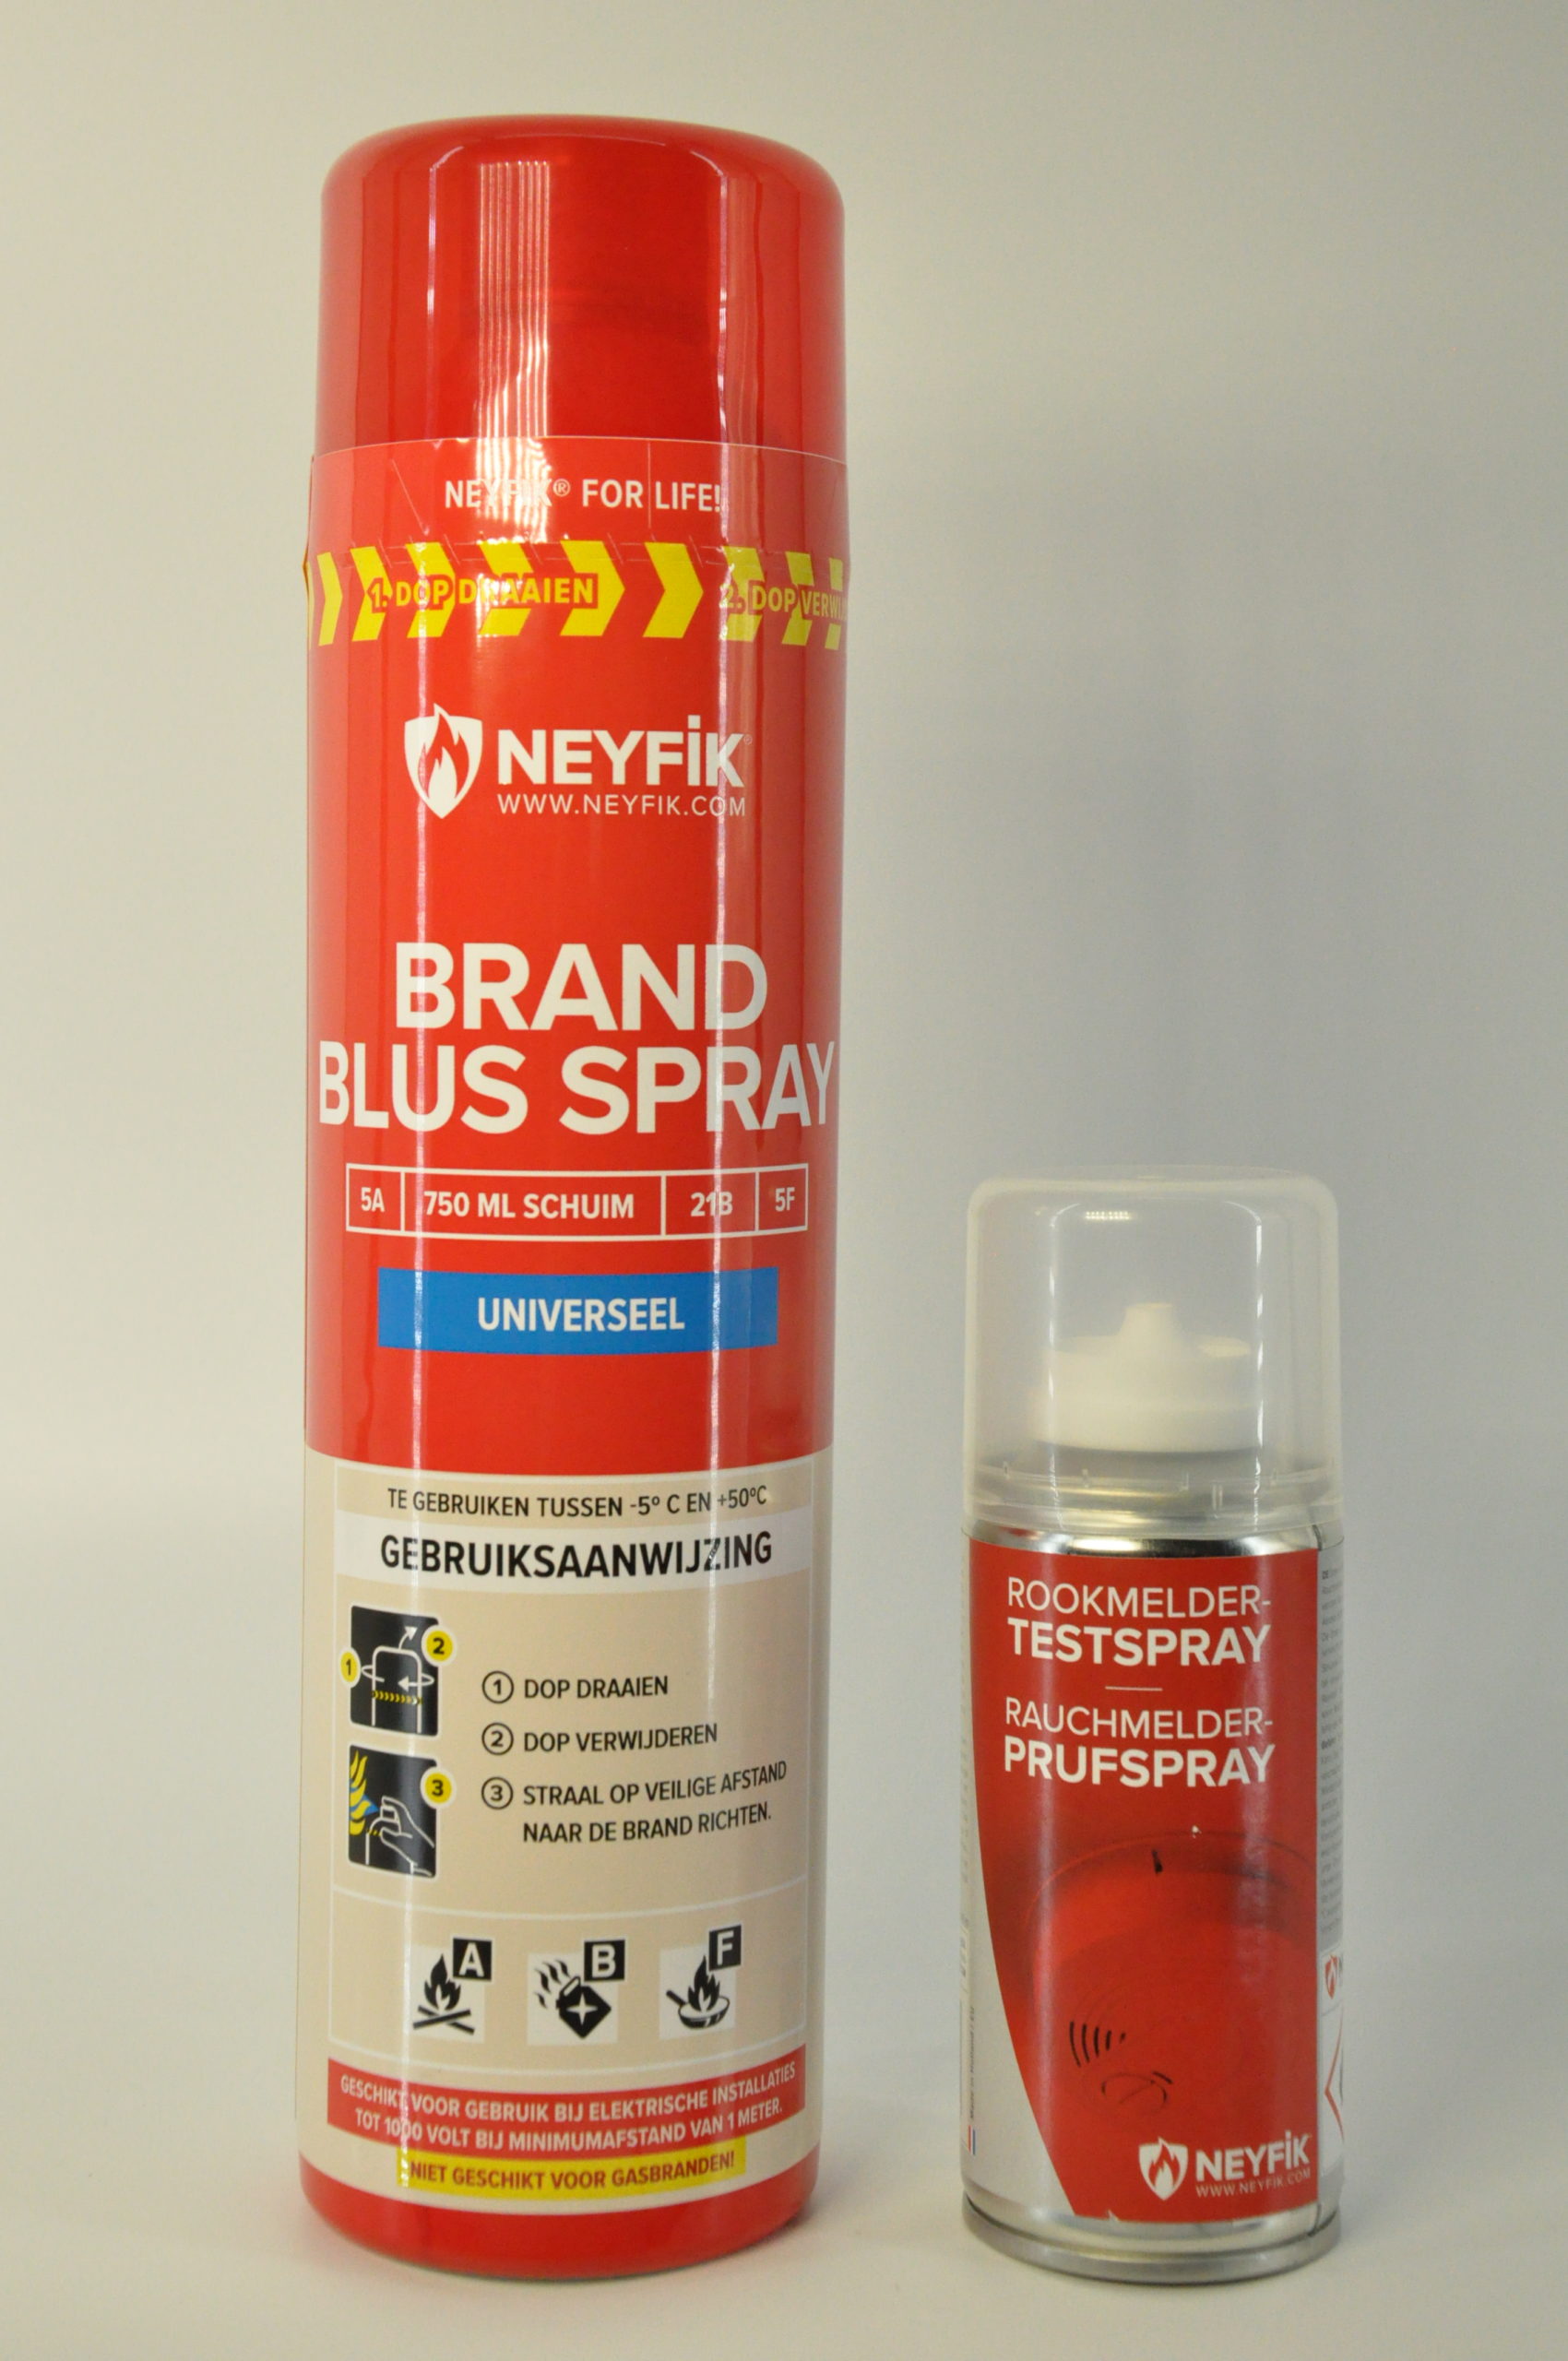 NEYFIK® Universell - Feuerlöscher - Spray